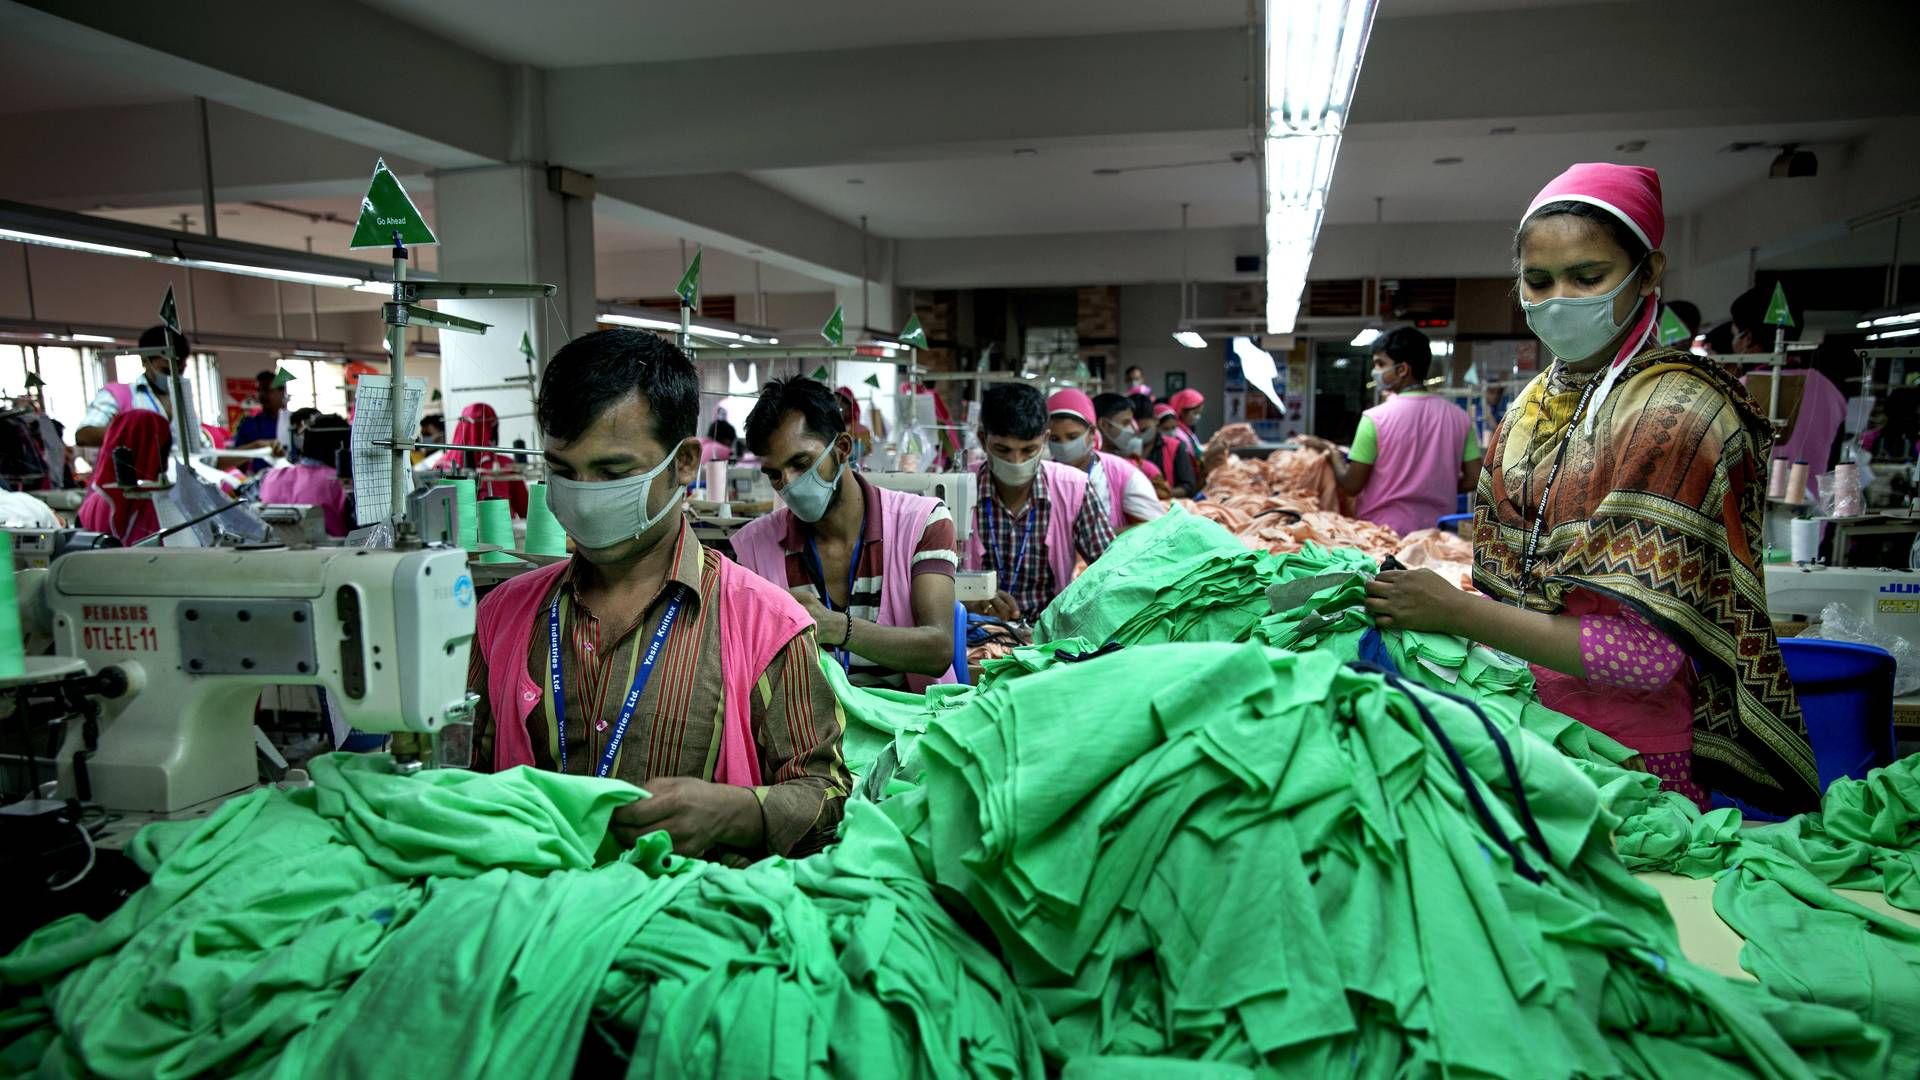 Underleverandører som fx tekstil- og tøjfabrikker i Asien bør indgå bedre i opgørelsen af danske virksomheders klimaaftryk ifølge Klimarådet. | Foto: Jacob Ehrbahn/Politiken